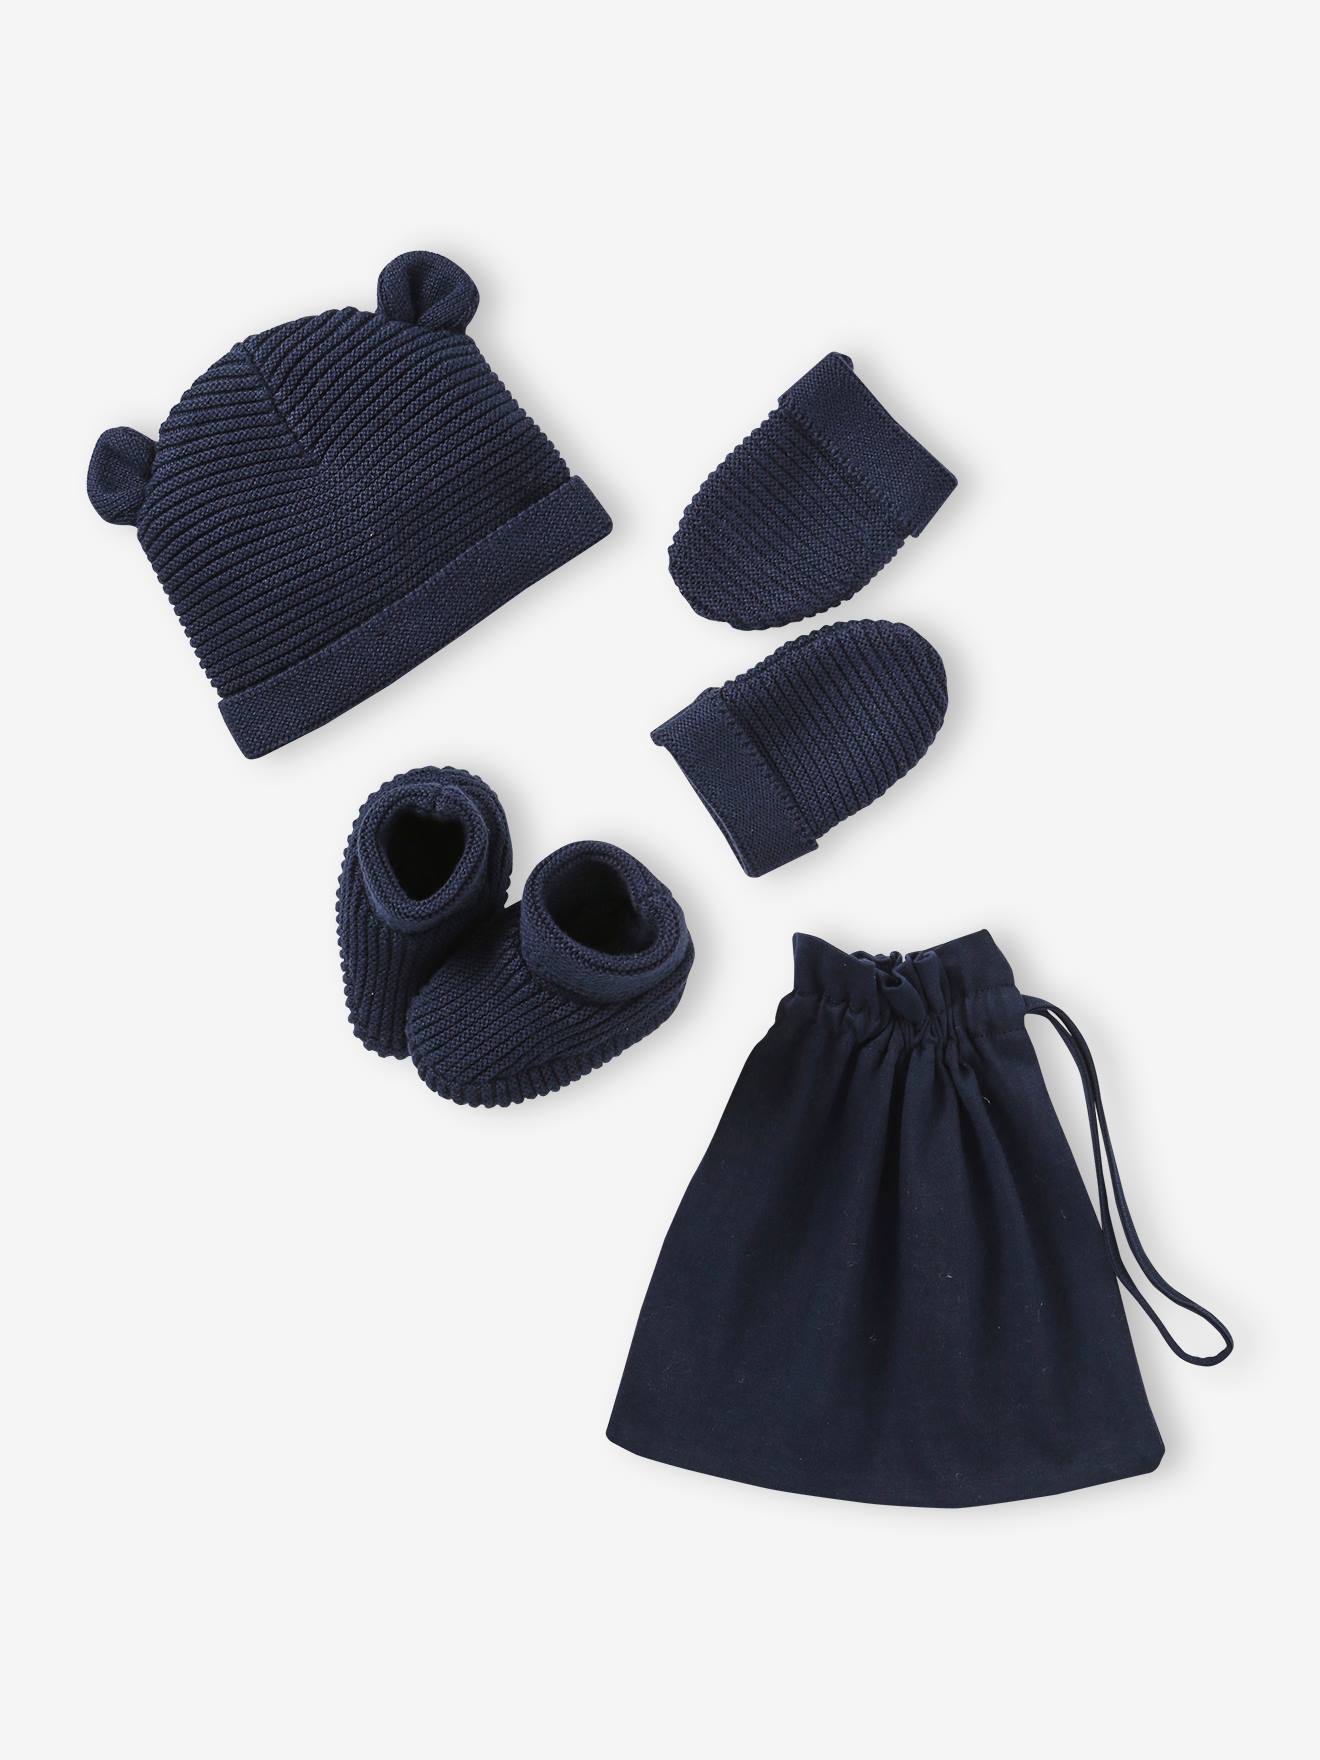 VERTBAUDET Conjunto de gorra, manoplas y patucos para recién nacido, con bolsa a juego azul marino